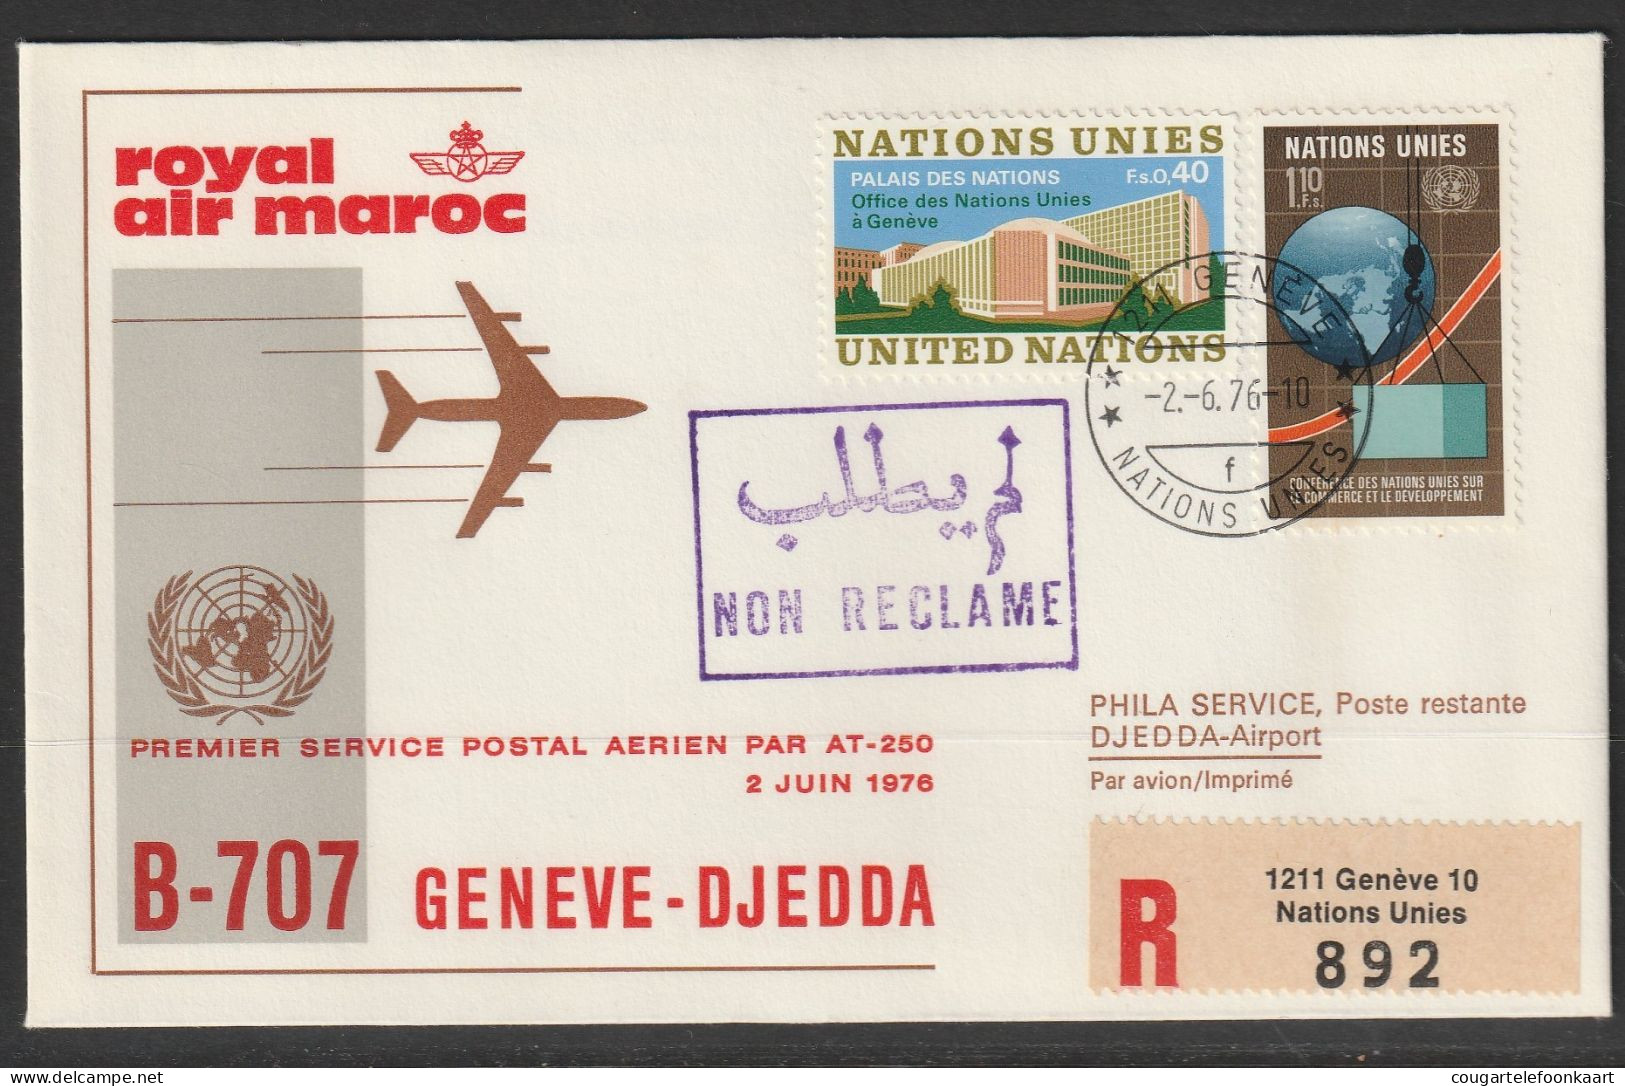 1976, Royal Air Maroc, Erstflug, Genf UN - Djedda - Eerste Vluchten